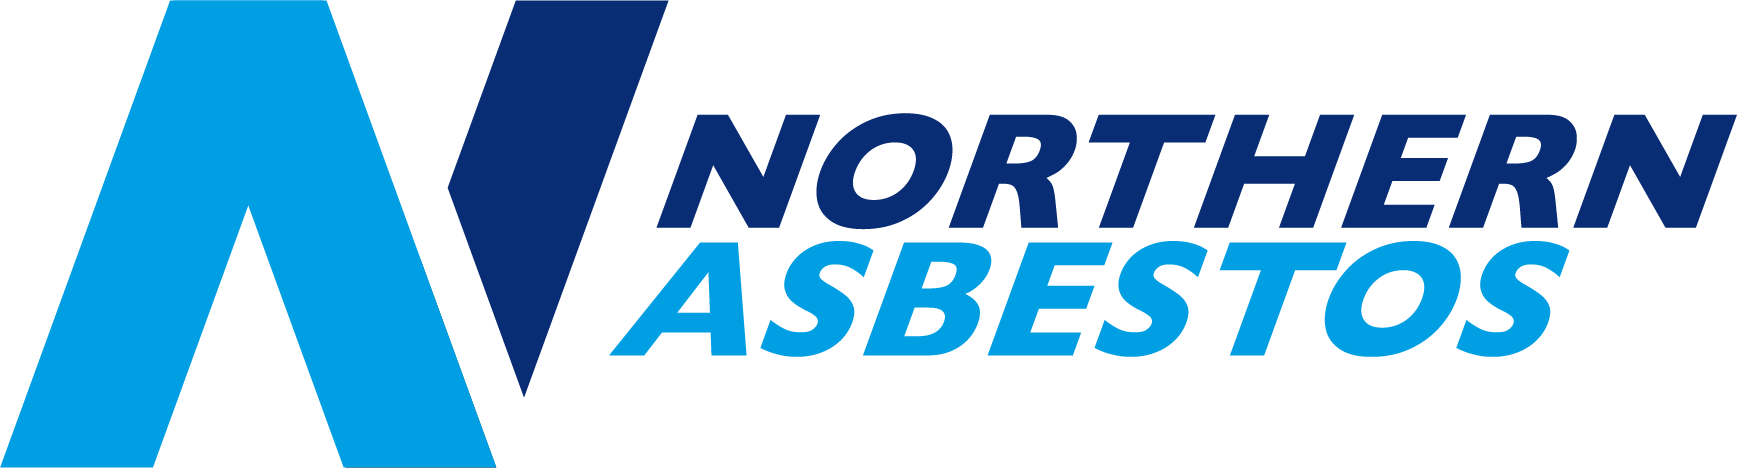 Northern Asbestos Services Ltd